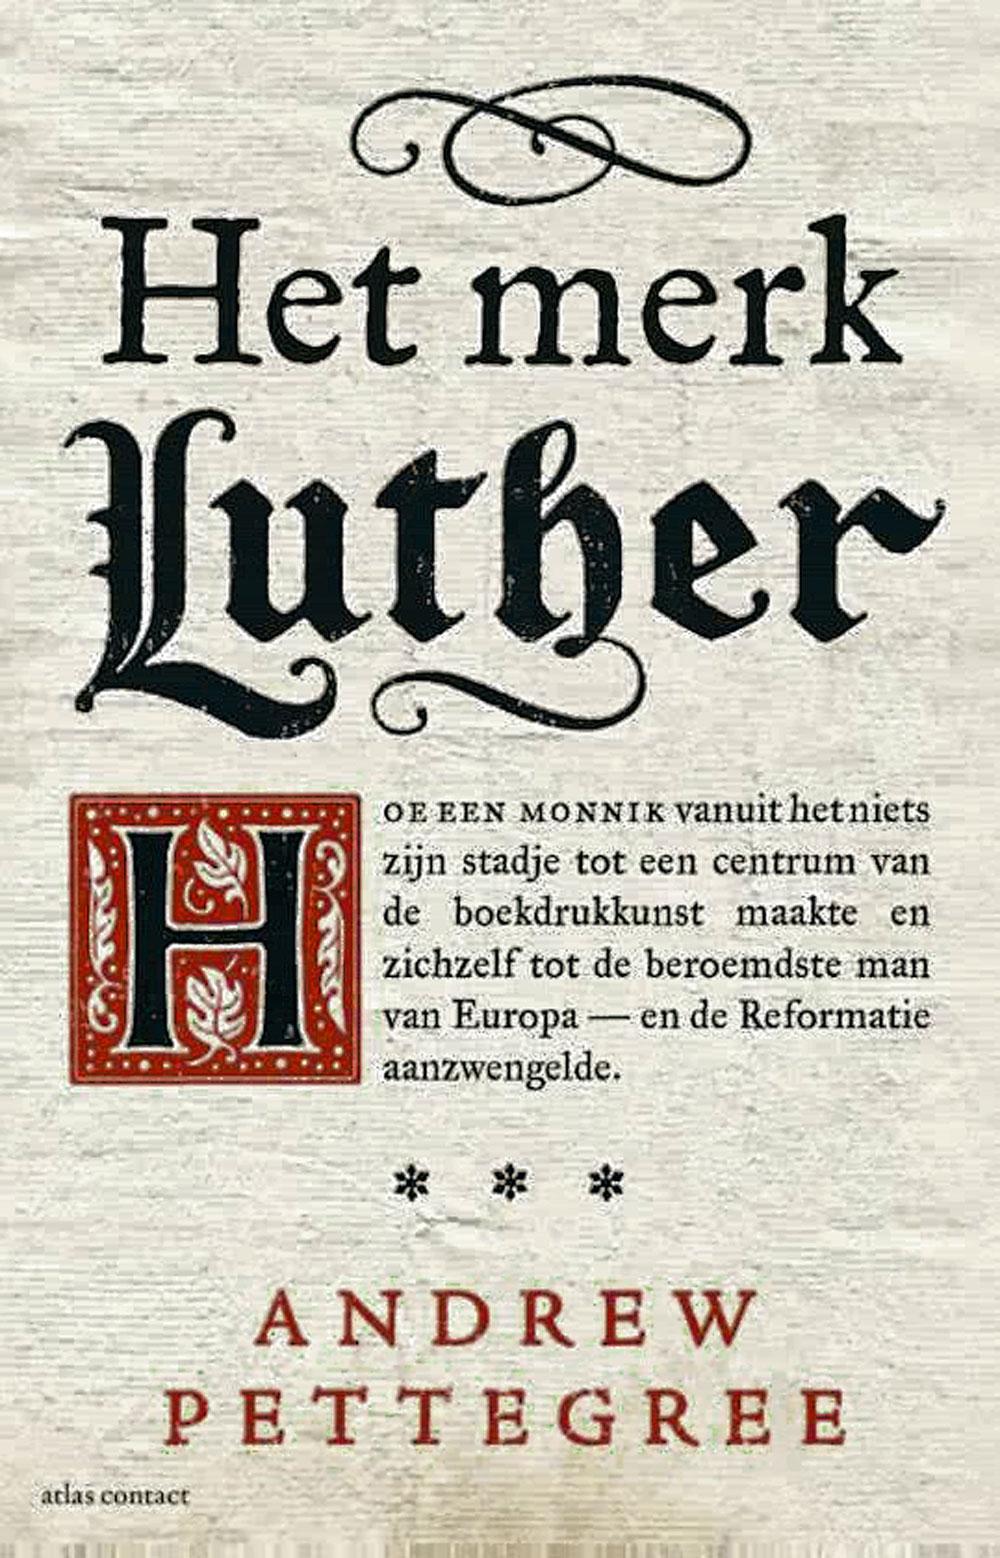 Andrew Pettegree, Het merk Luther, Atlas-Contact, Amsterdam/Antwerpen, 434 blz., ? 29,99.